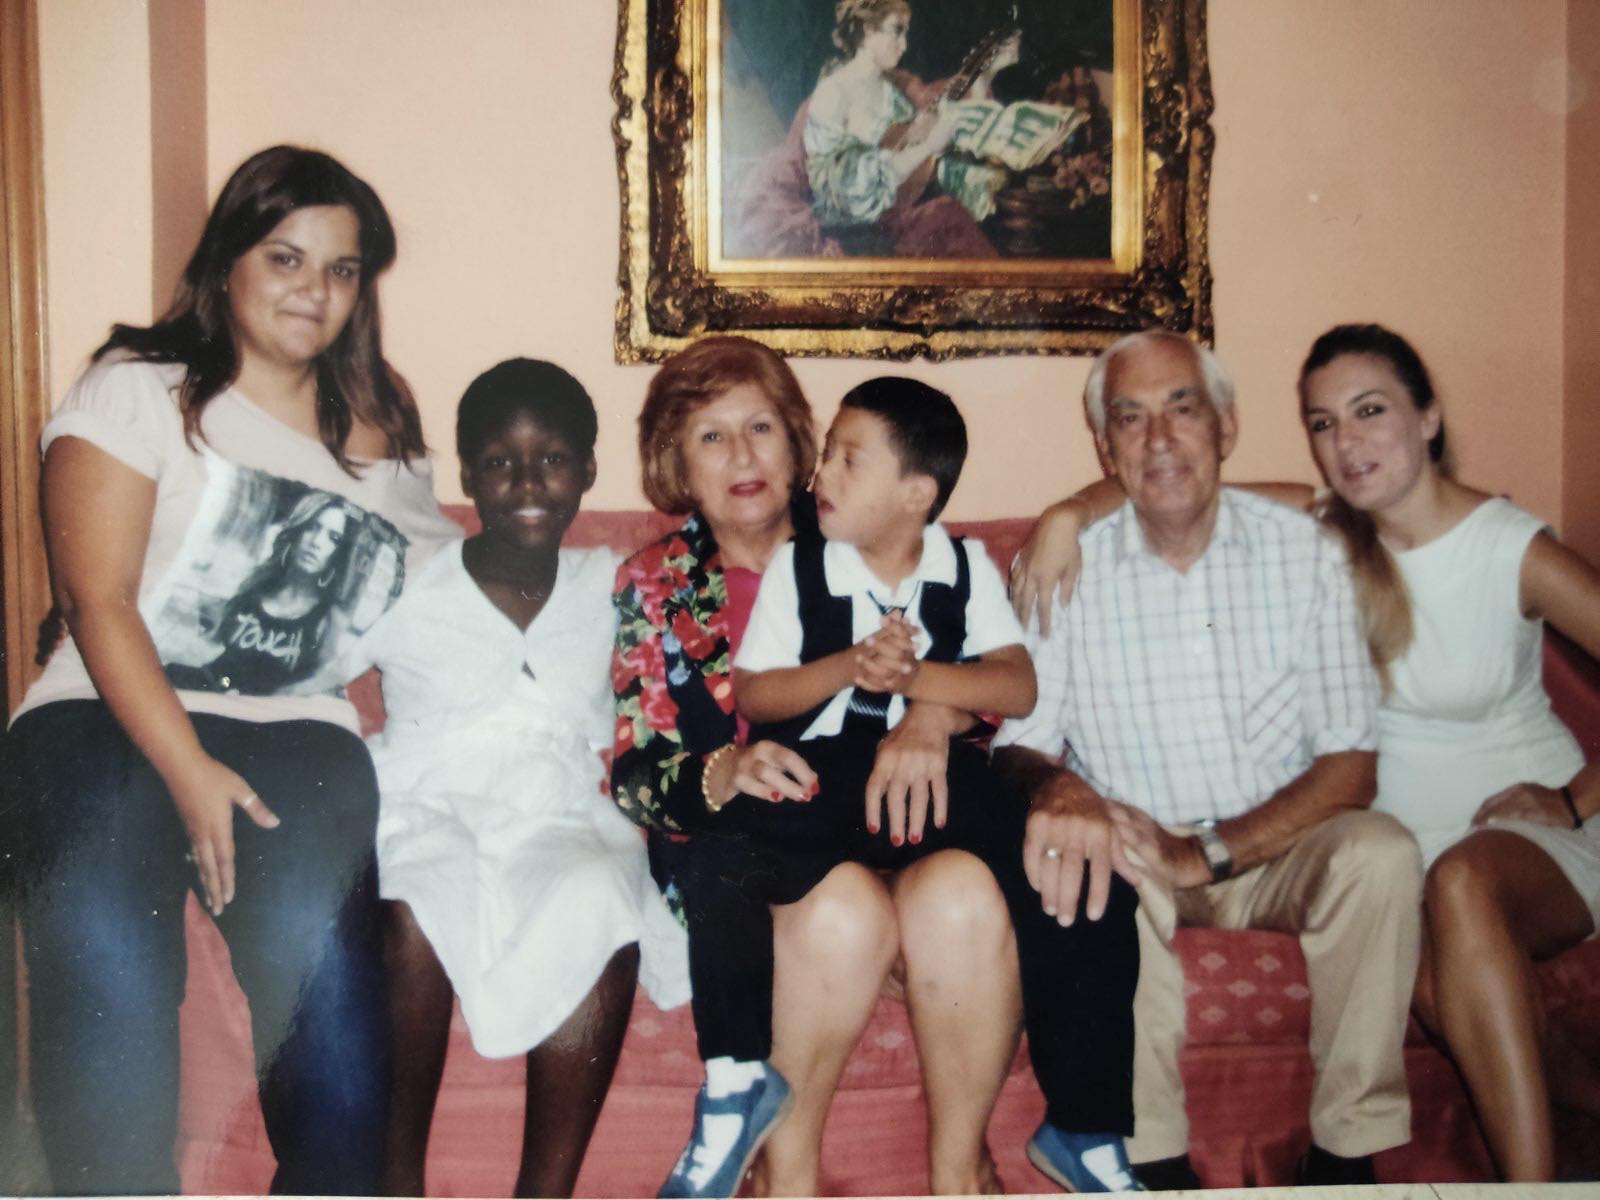 Θεσσαλονίκη: Έγινε ανάδοχη μητέρα σε πέντε παιδιά, υιοθέτησε ένα κι ανέλαβε ένα ακόμα με αναπηρίες